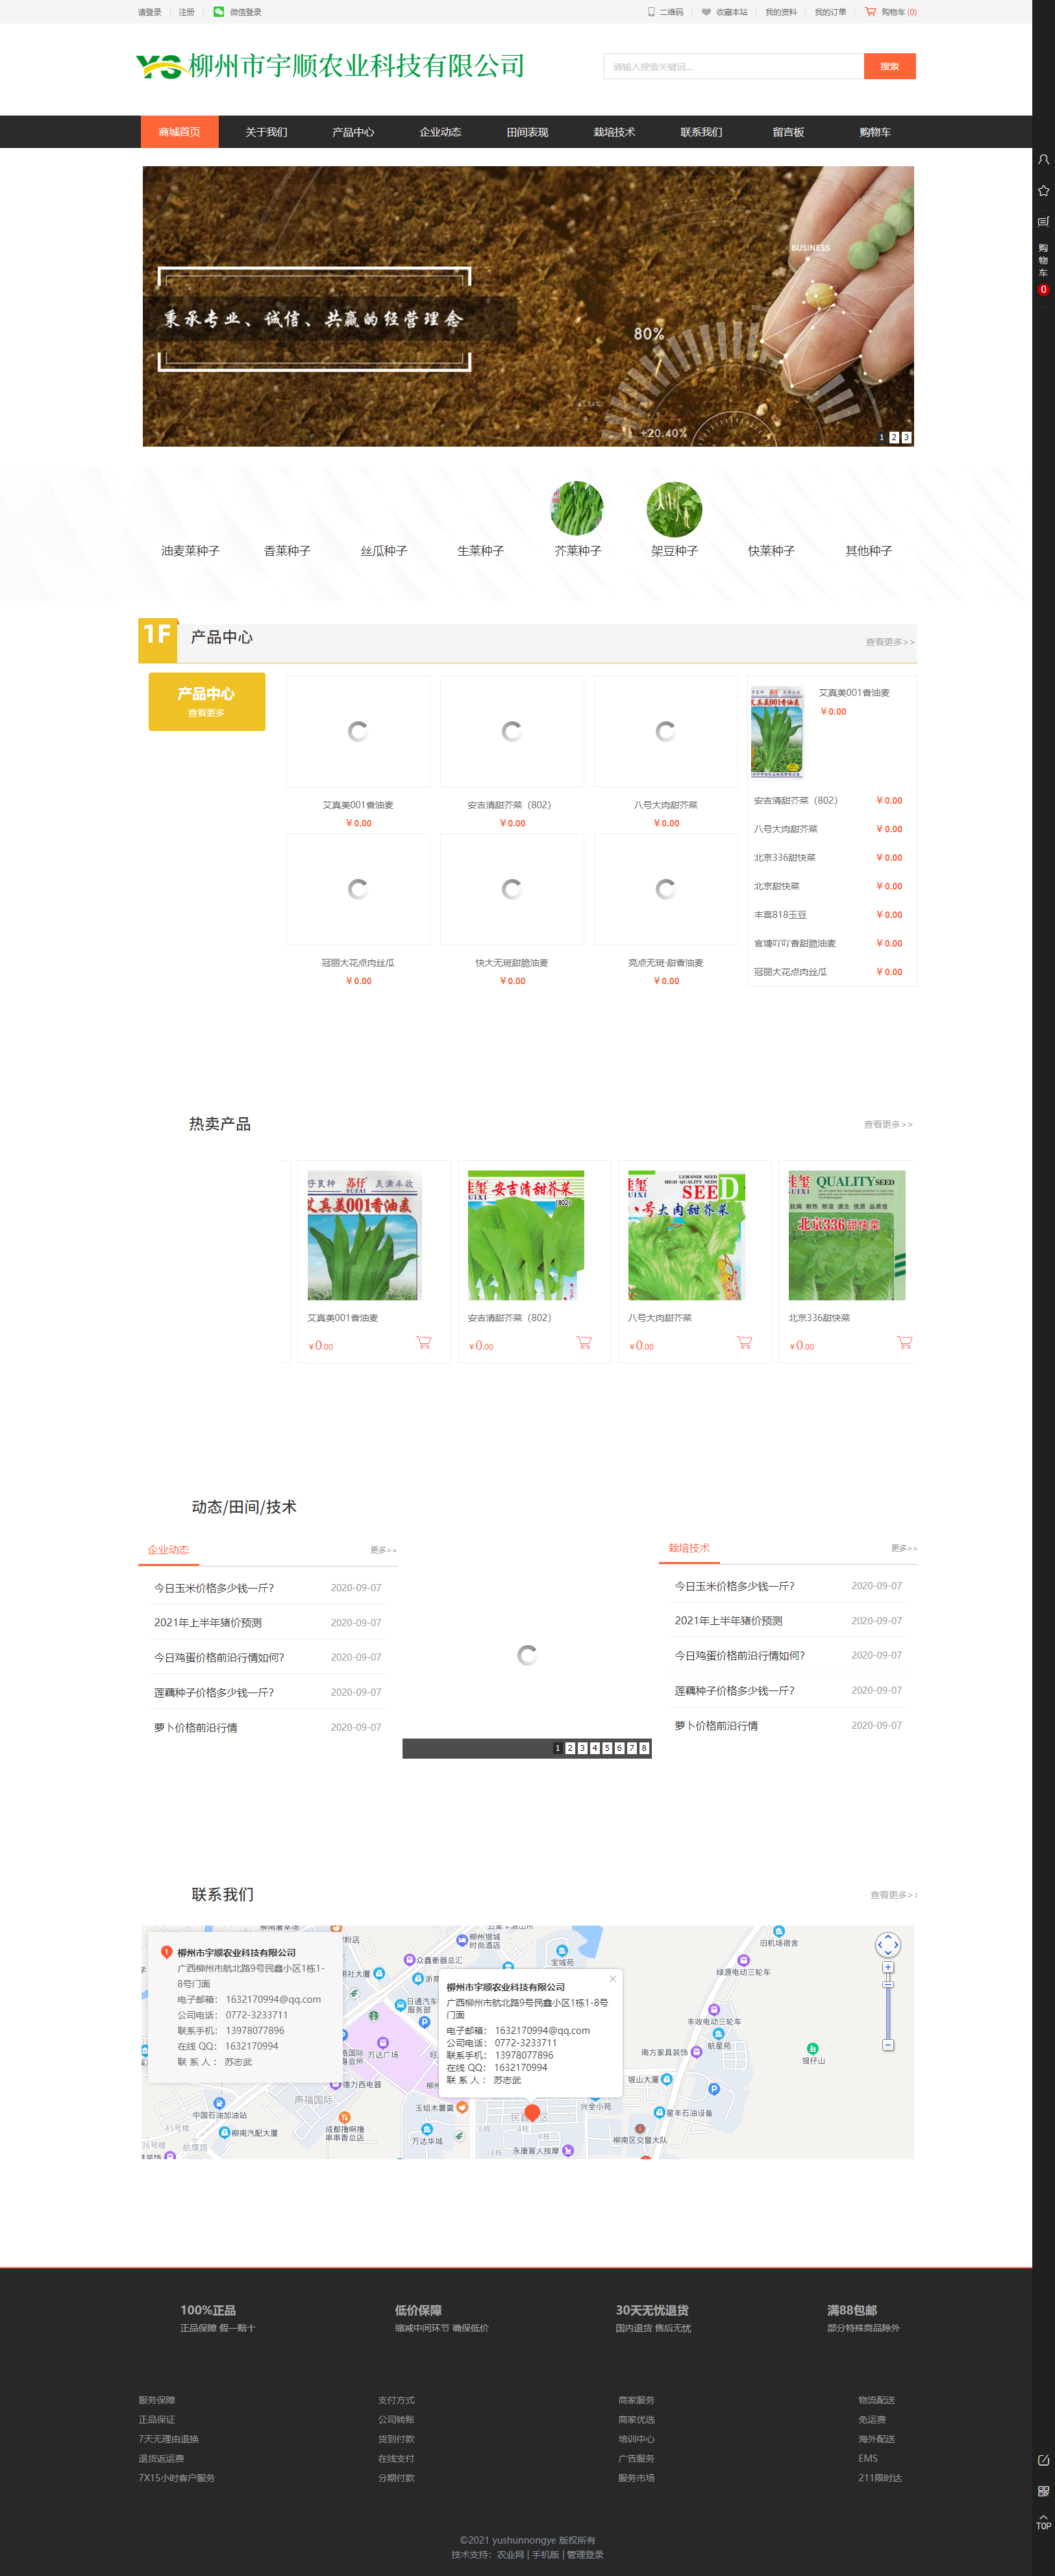 柳州市宇顺农业科技有限公司网站案例